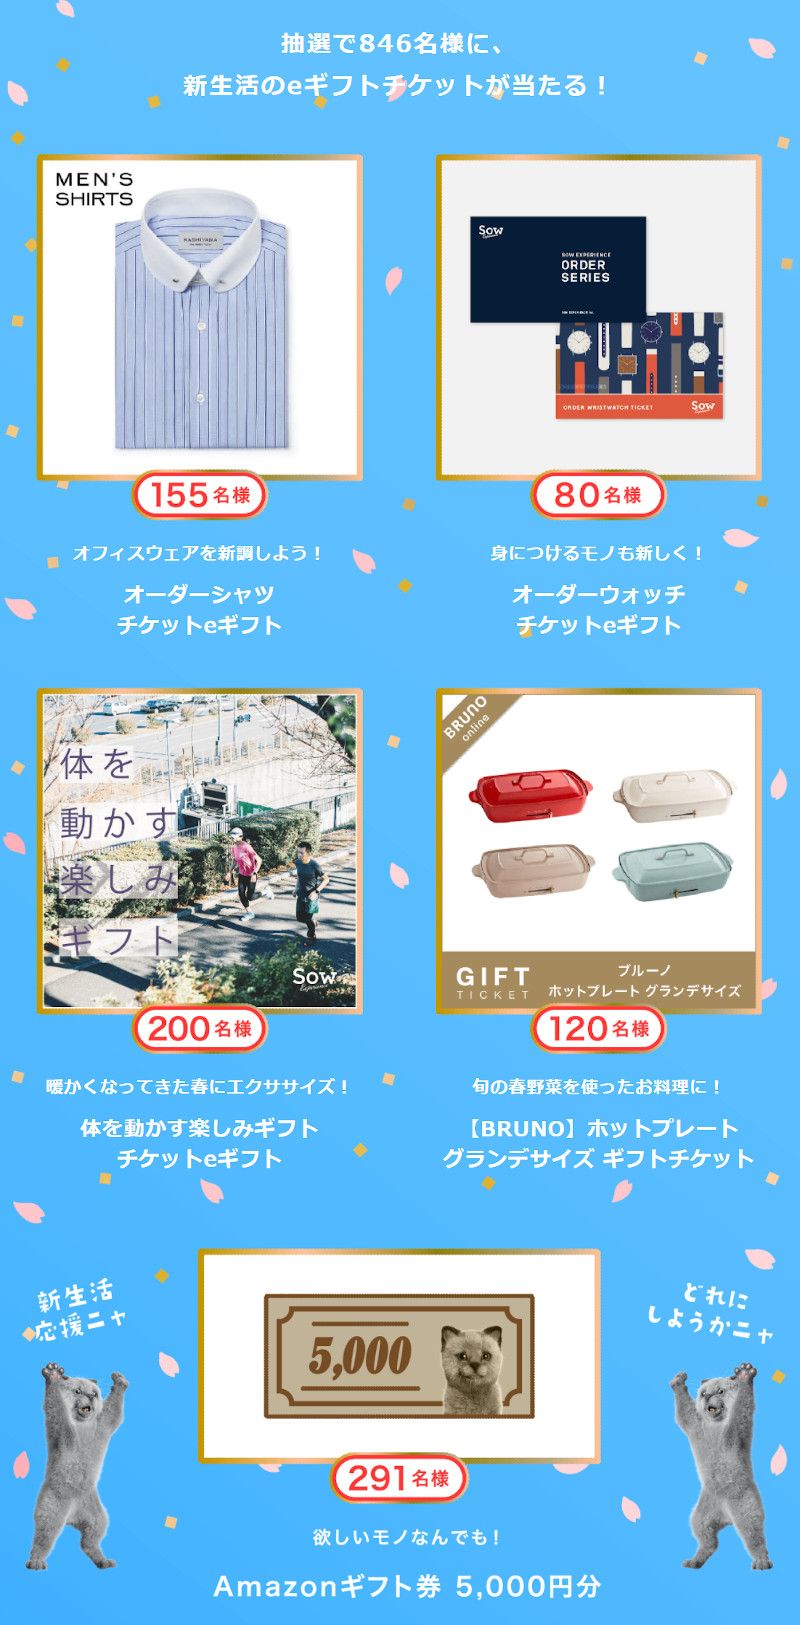 NURO光 猫祭キャンペーン第4弾 総額1,000万円分のギフト券をプレゼント